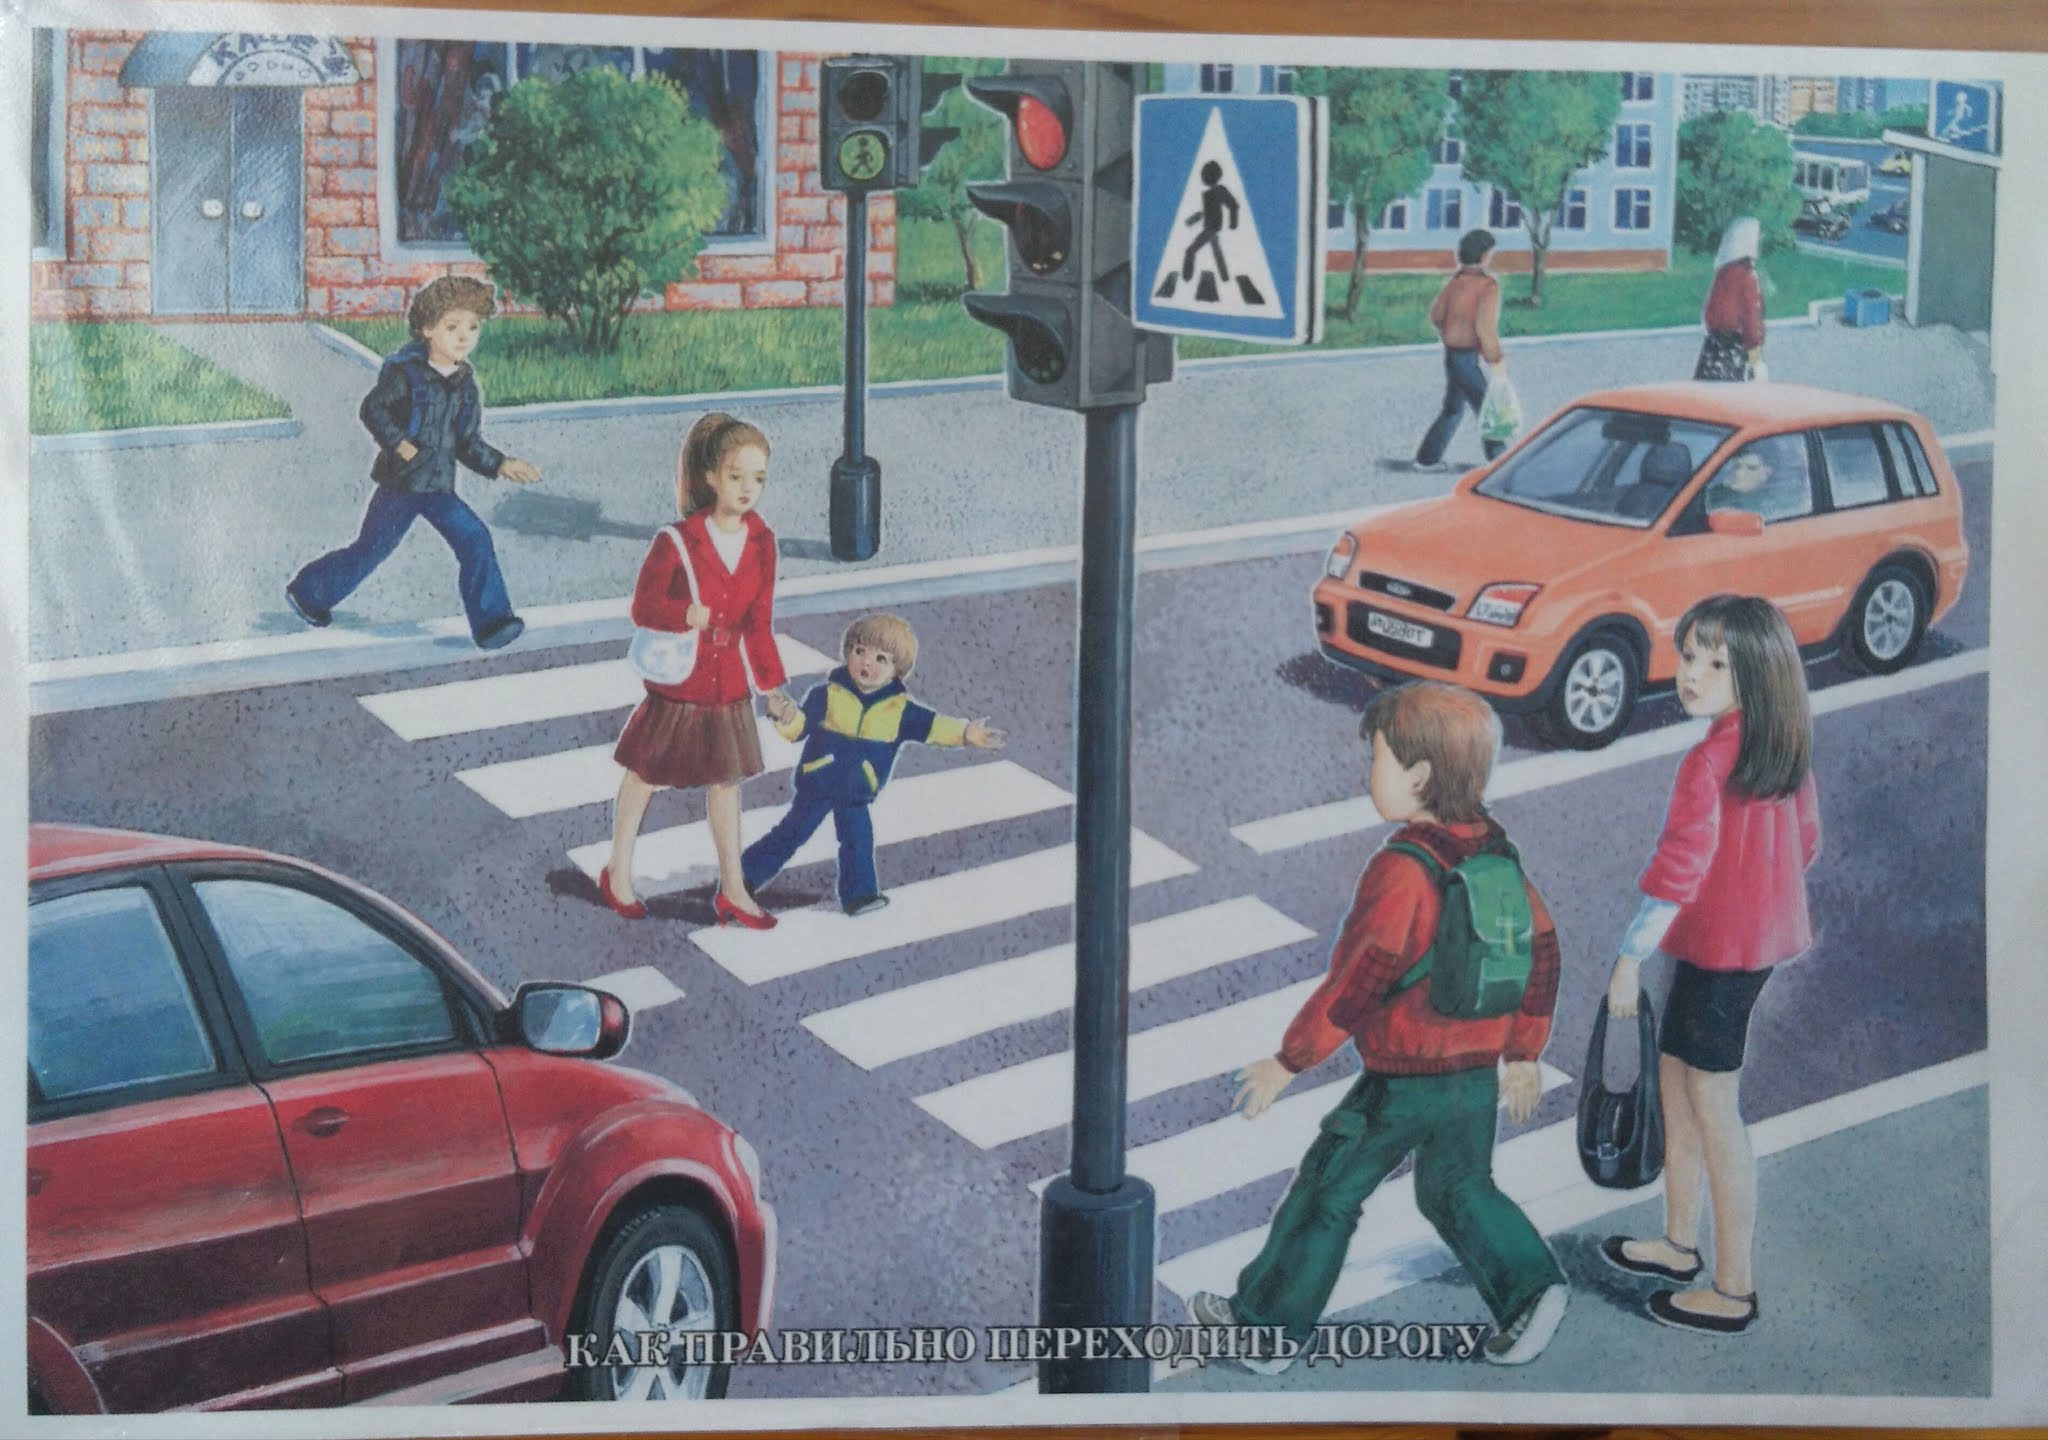 Ситуация пдд для детей. Сюжетная картина на дороге. Ситуации на дороге для детей. Иллюстрации по правилам дорожного движения. ПДД для детей.